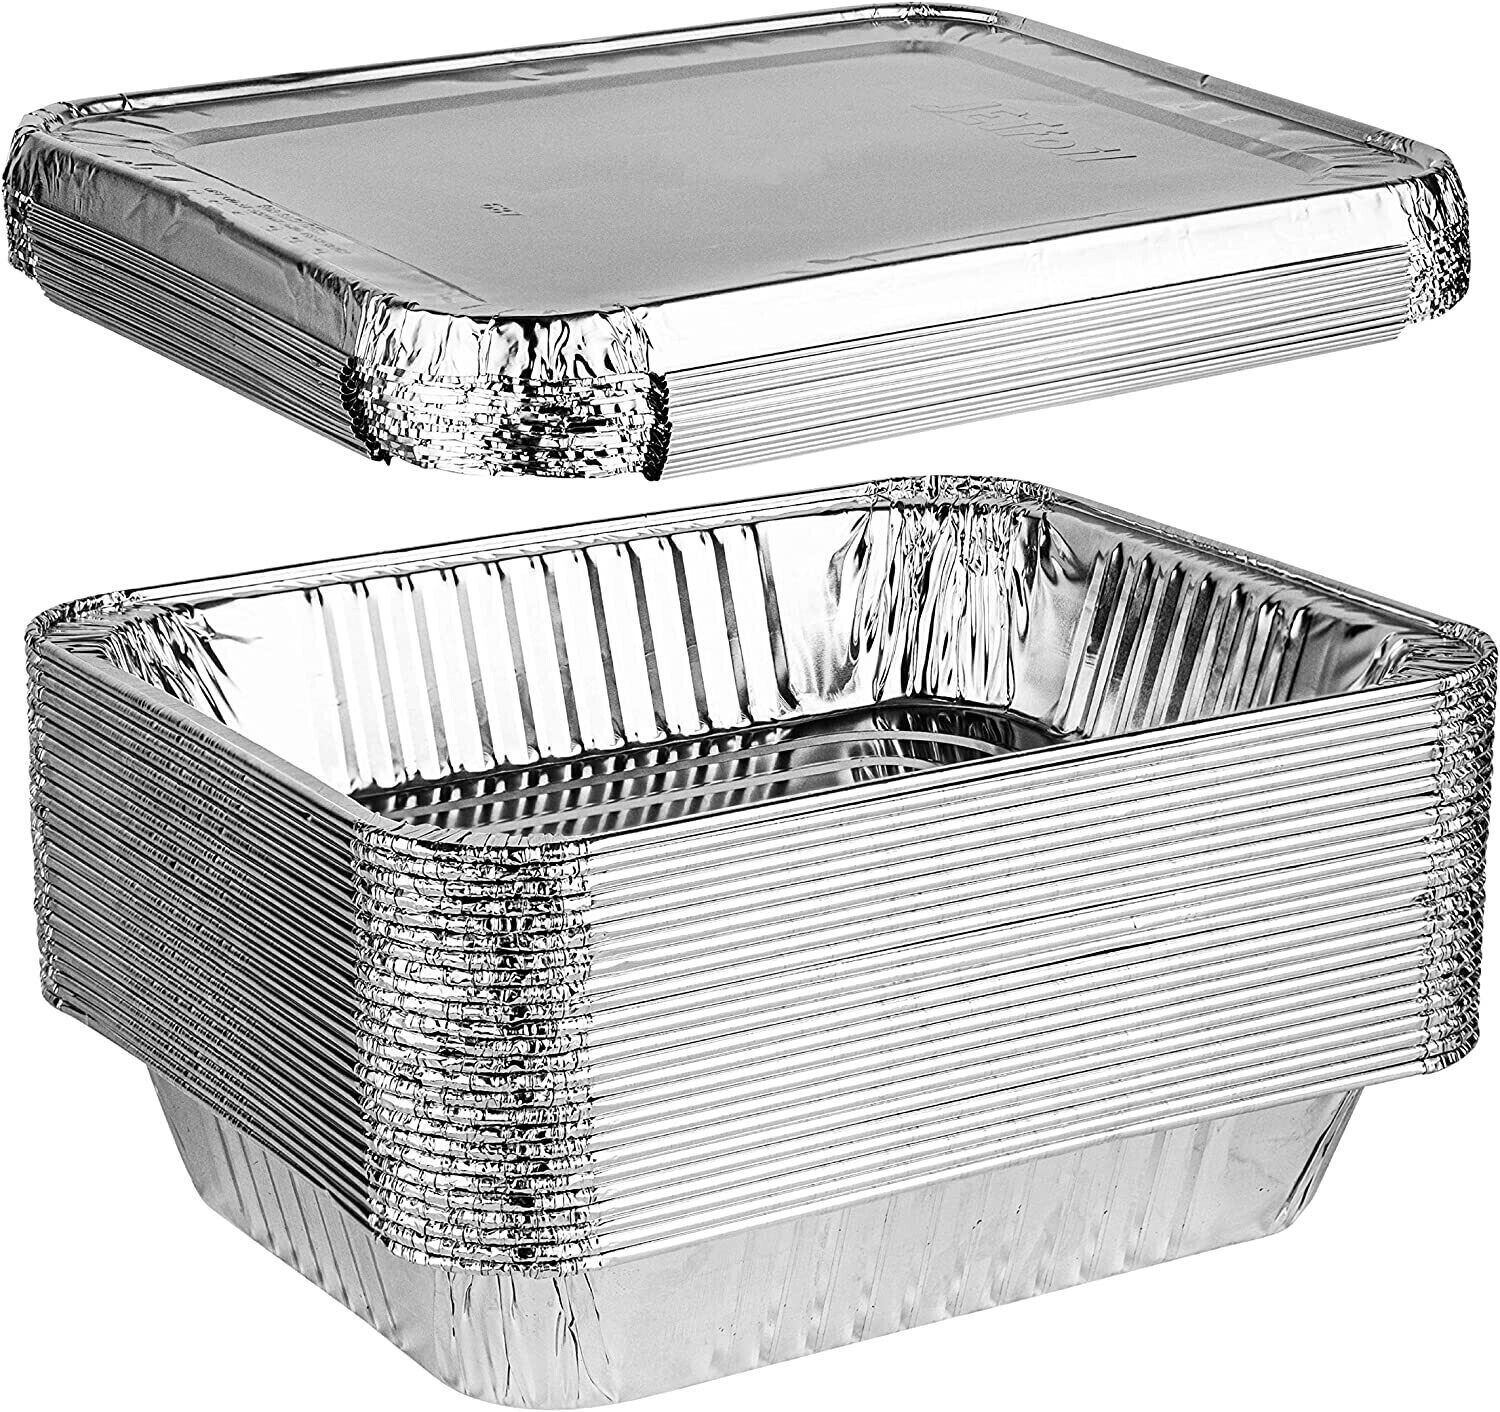 Statwrap aluminium food container rectangular 250ml with lid (10pcs)